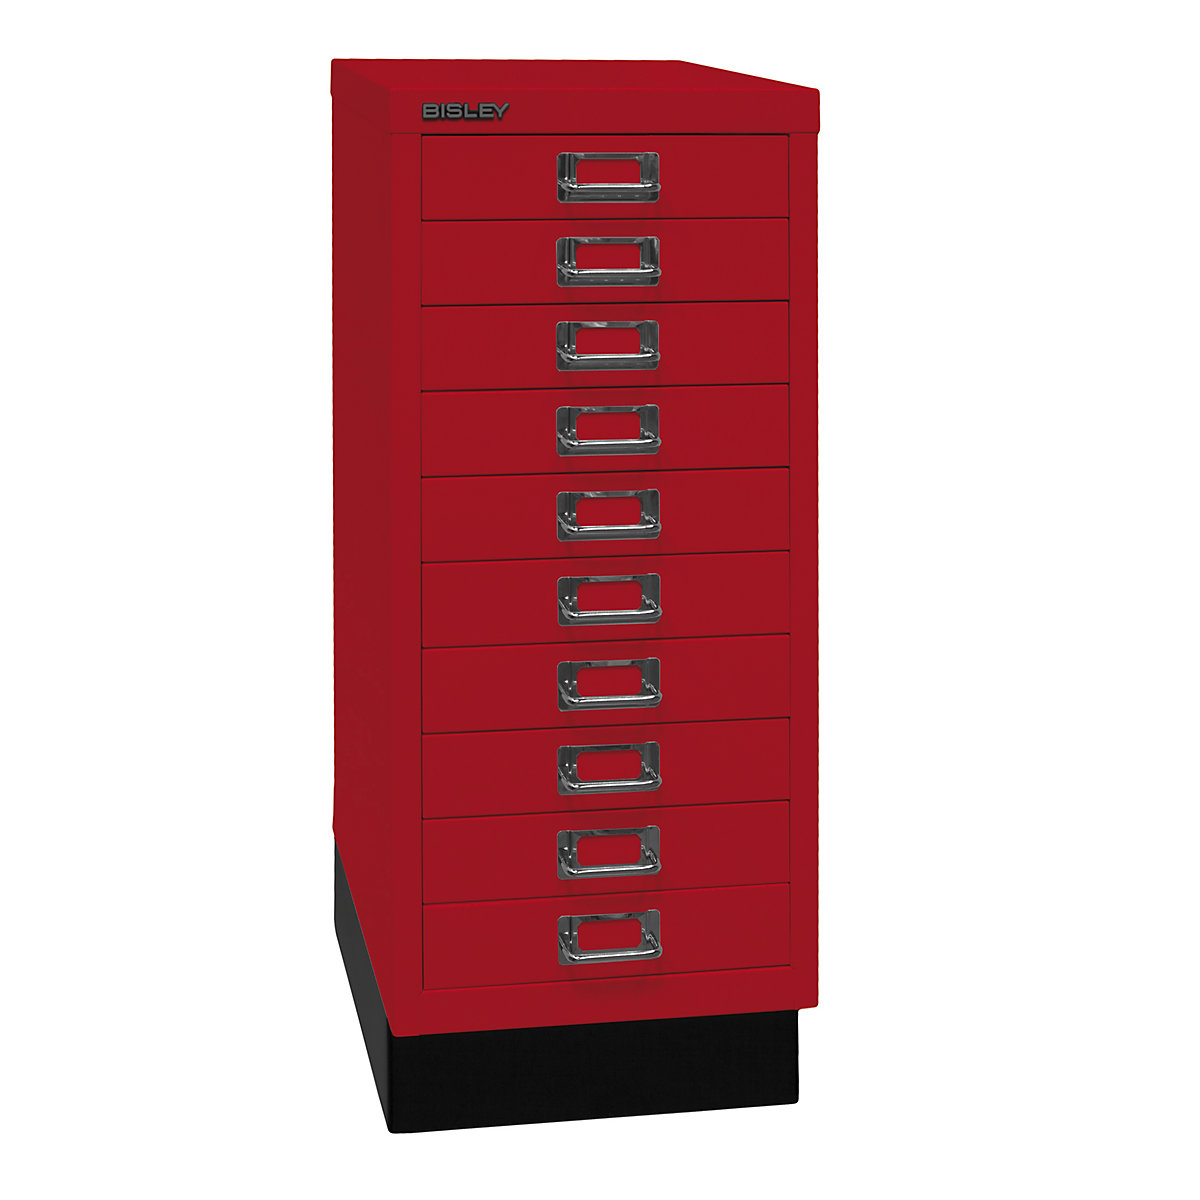 5 Drawer Bisley Multi-Drawer Cabinet - Cardinal Red